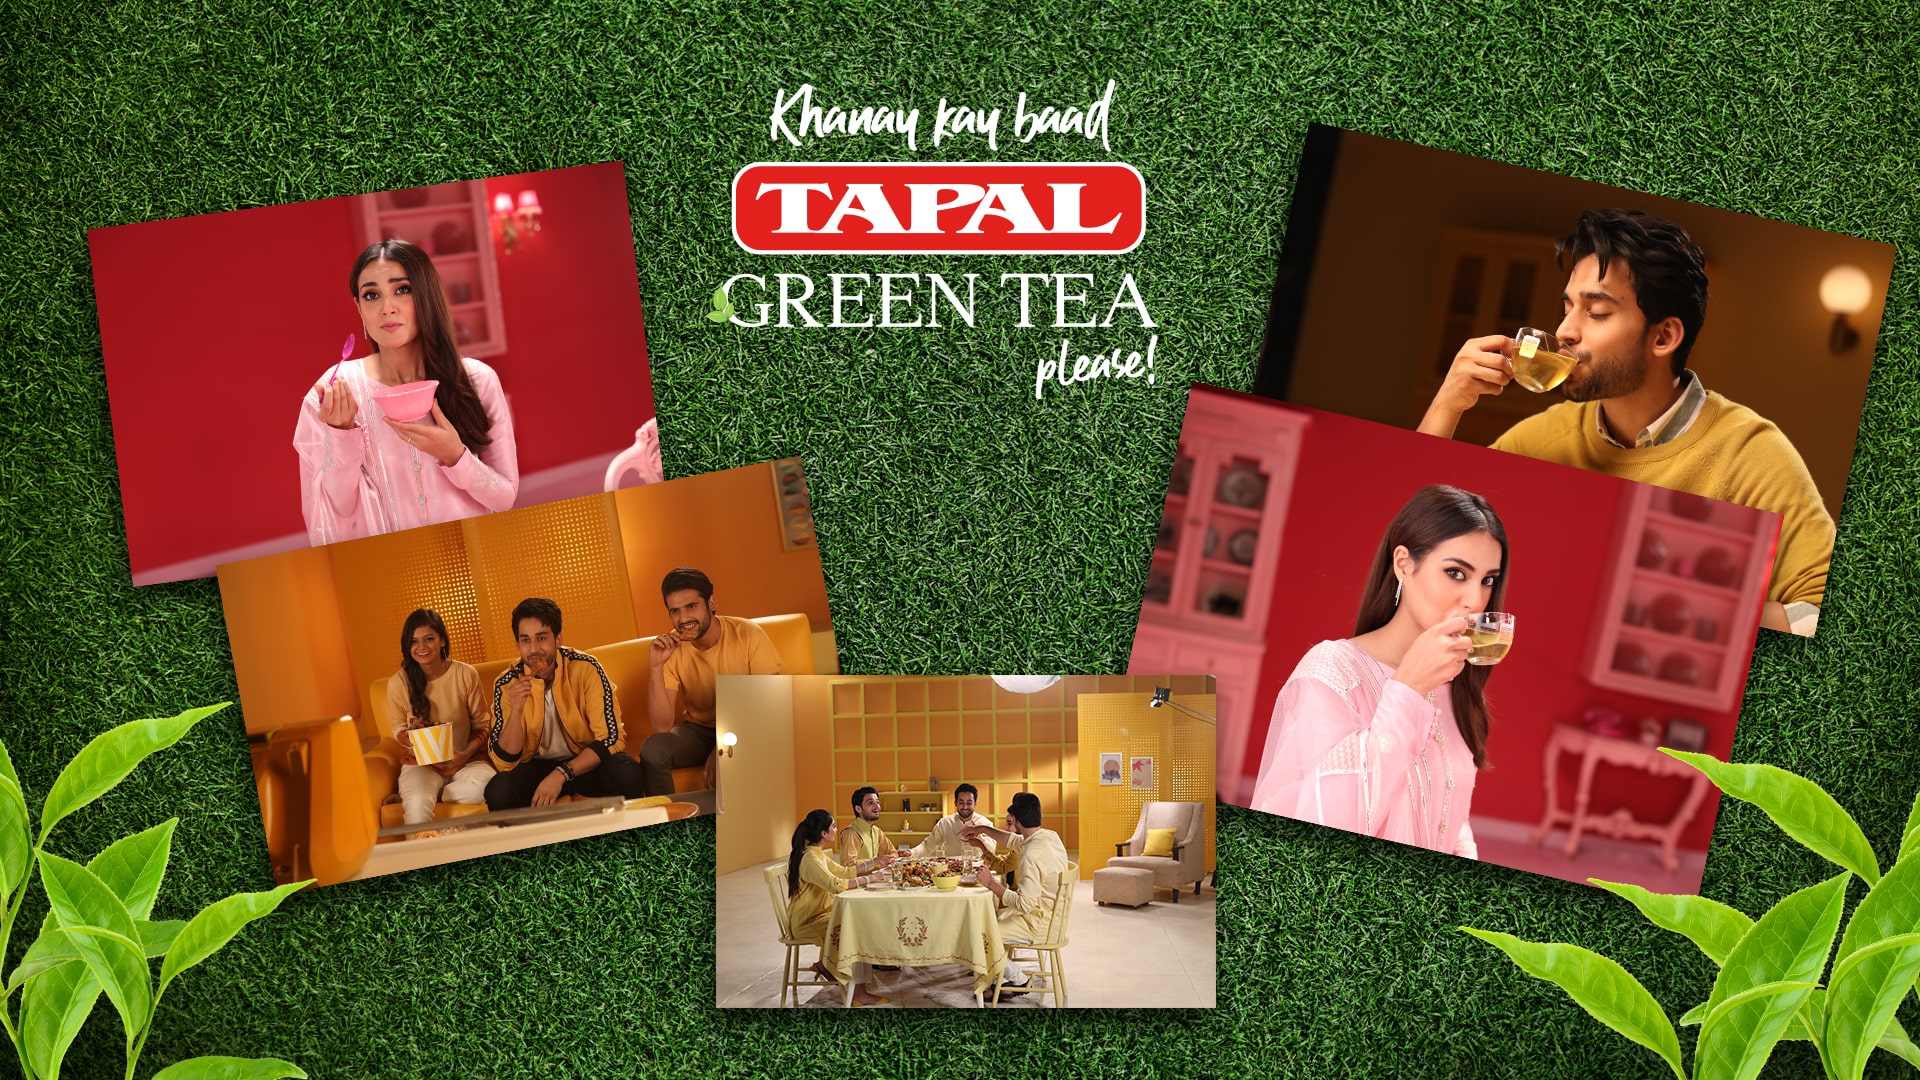 Tapal Green Tea | Khanay Kay Baad Tapal Green Tea Please